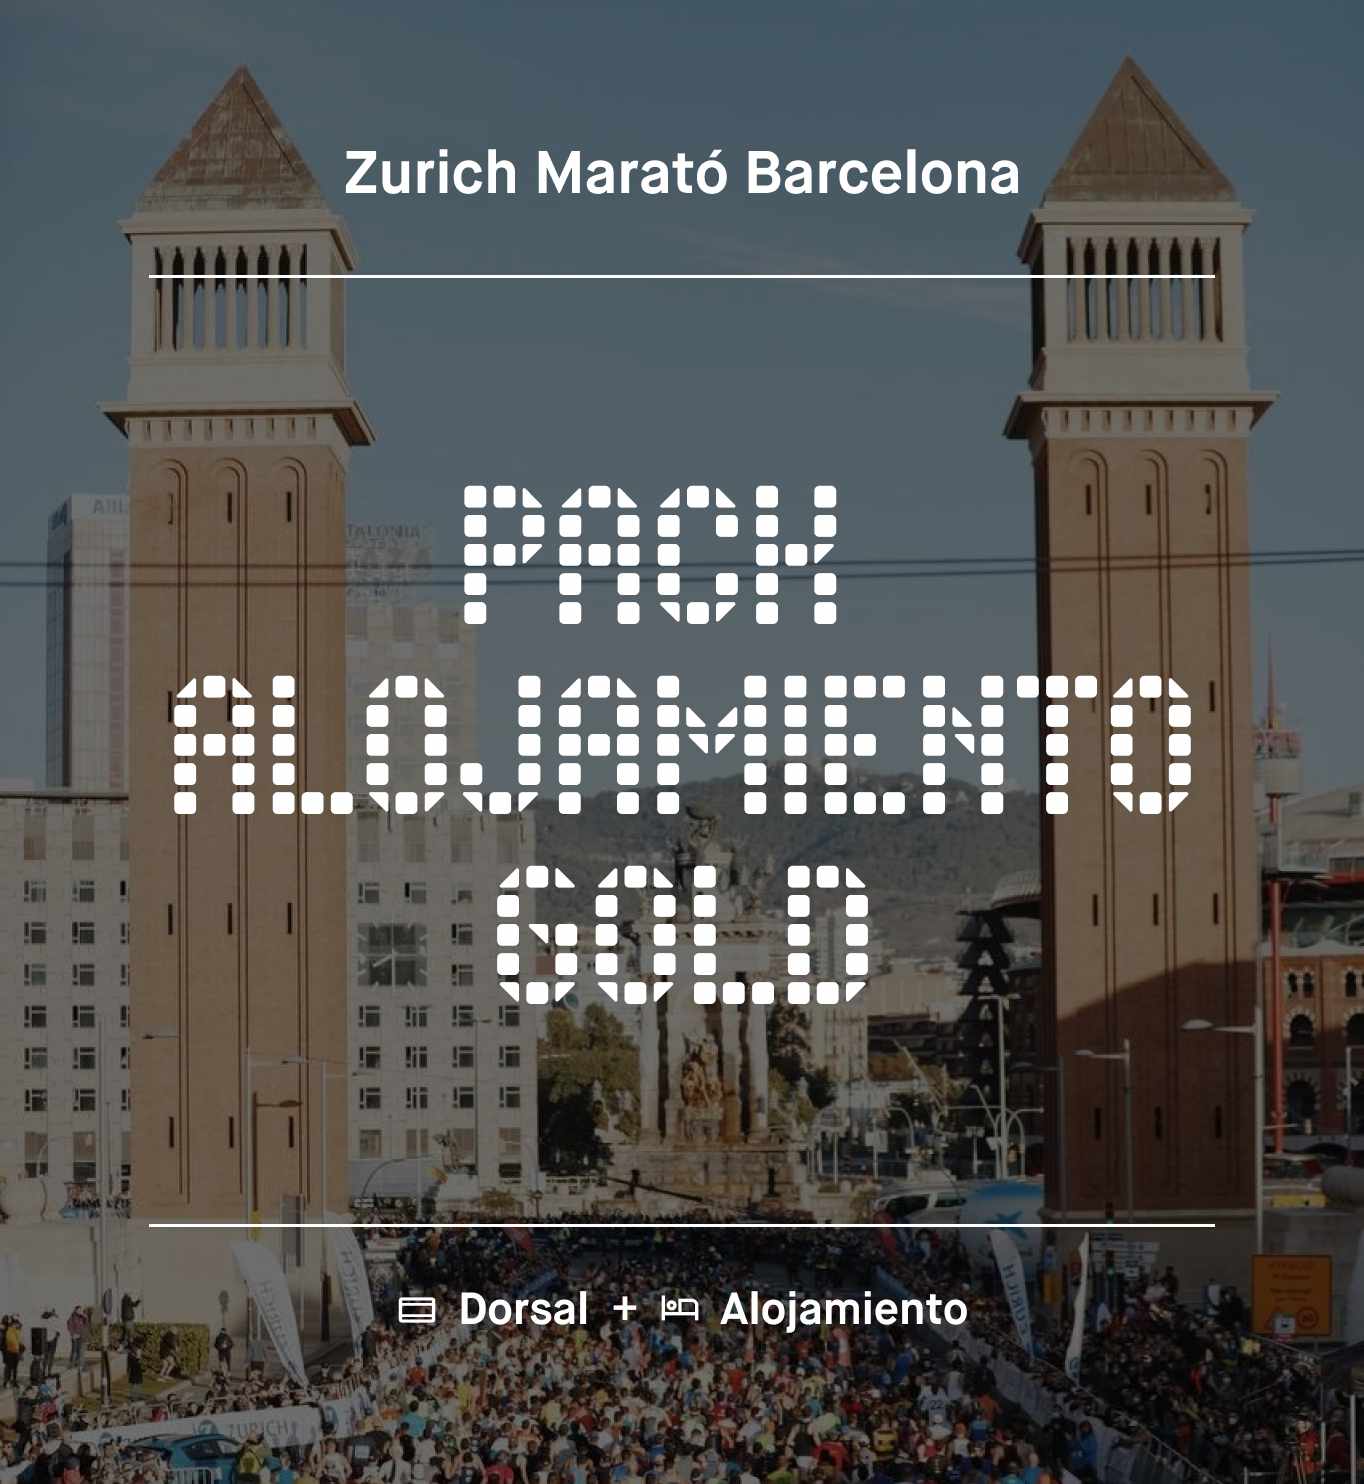 Zurich Marato Barcelona hotel pack bib number